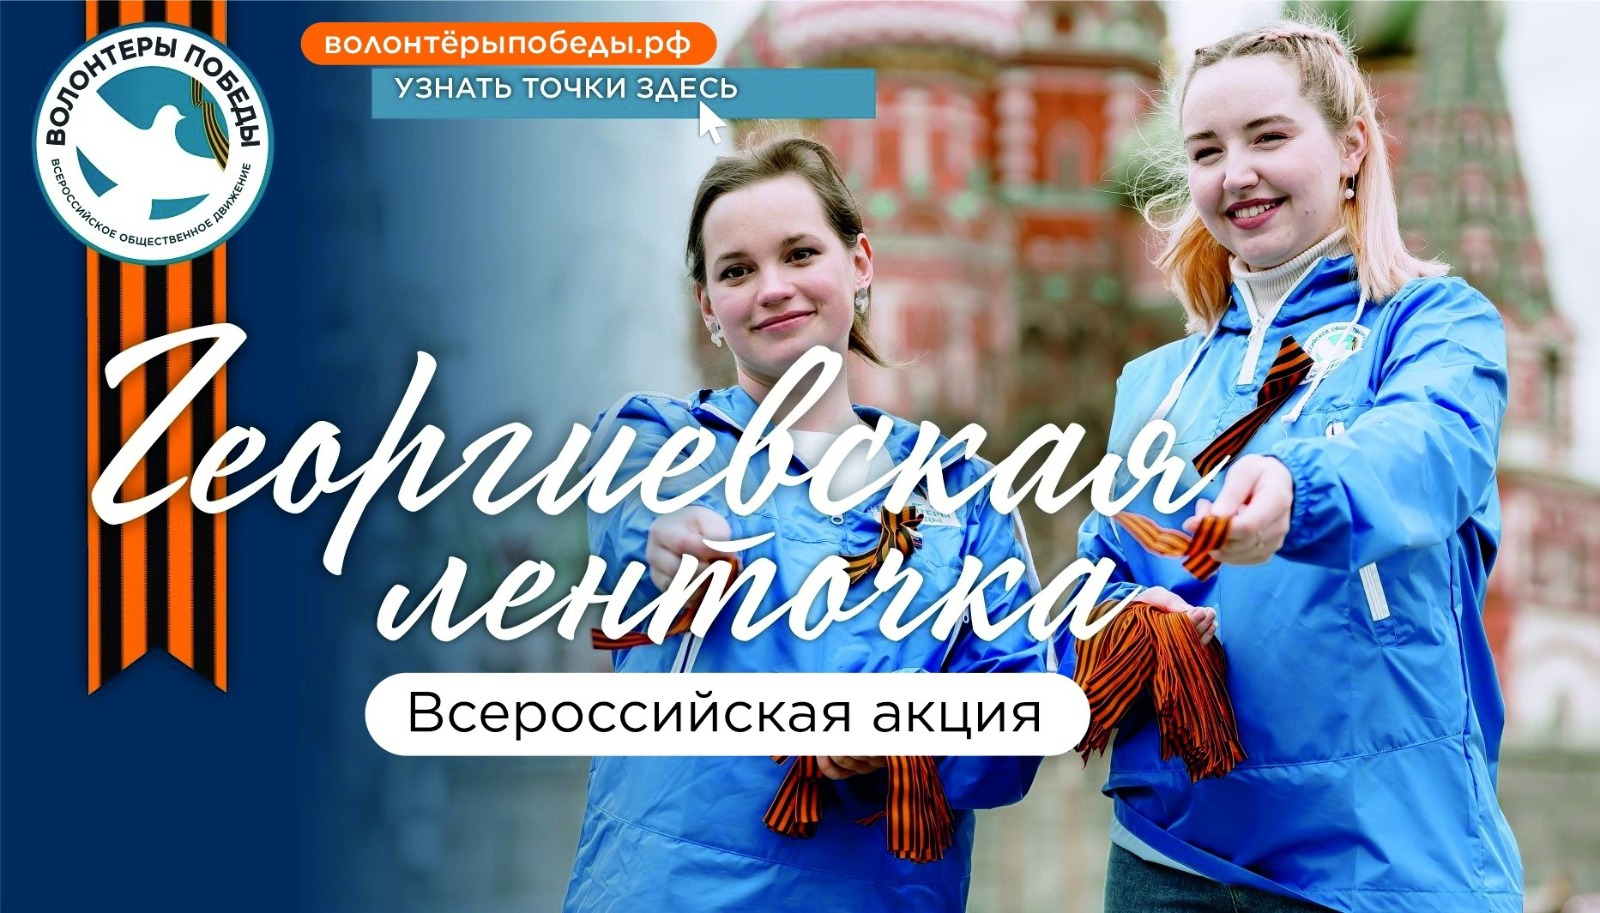 24 апреля в Иванове стартует ежегодная акция «Георгиевская ленточка».